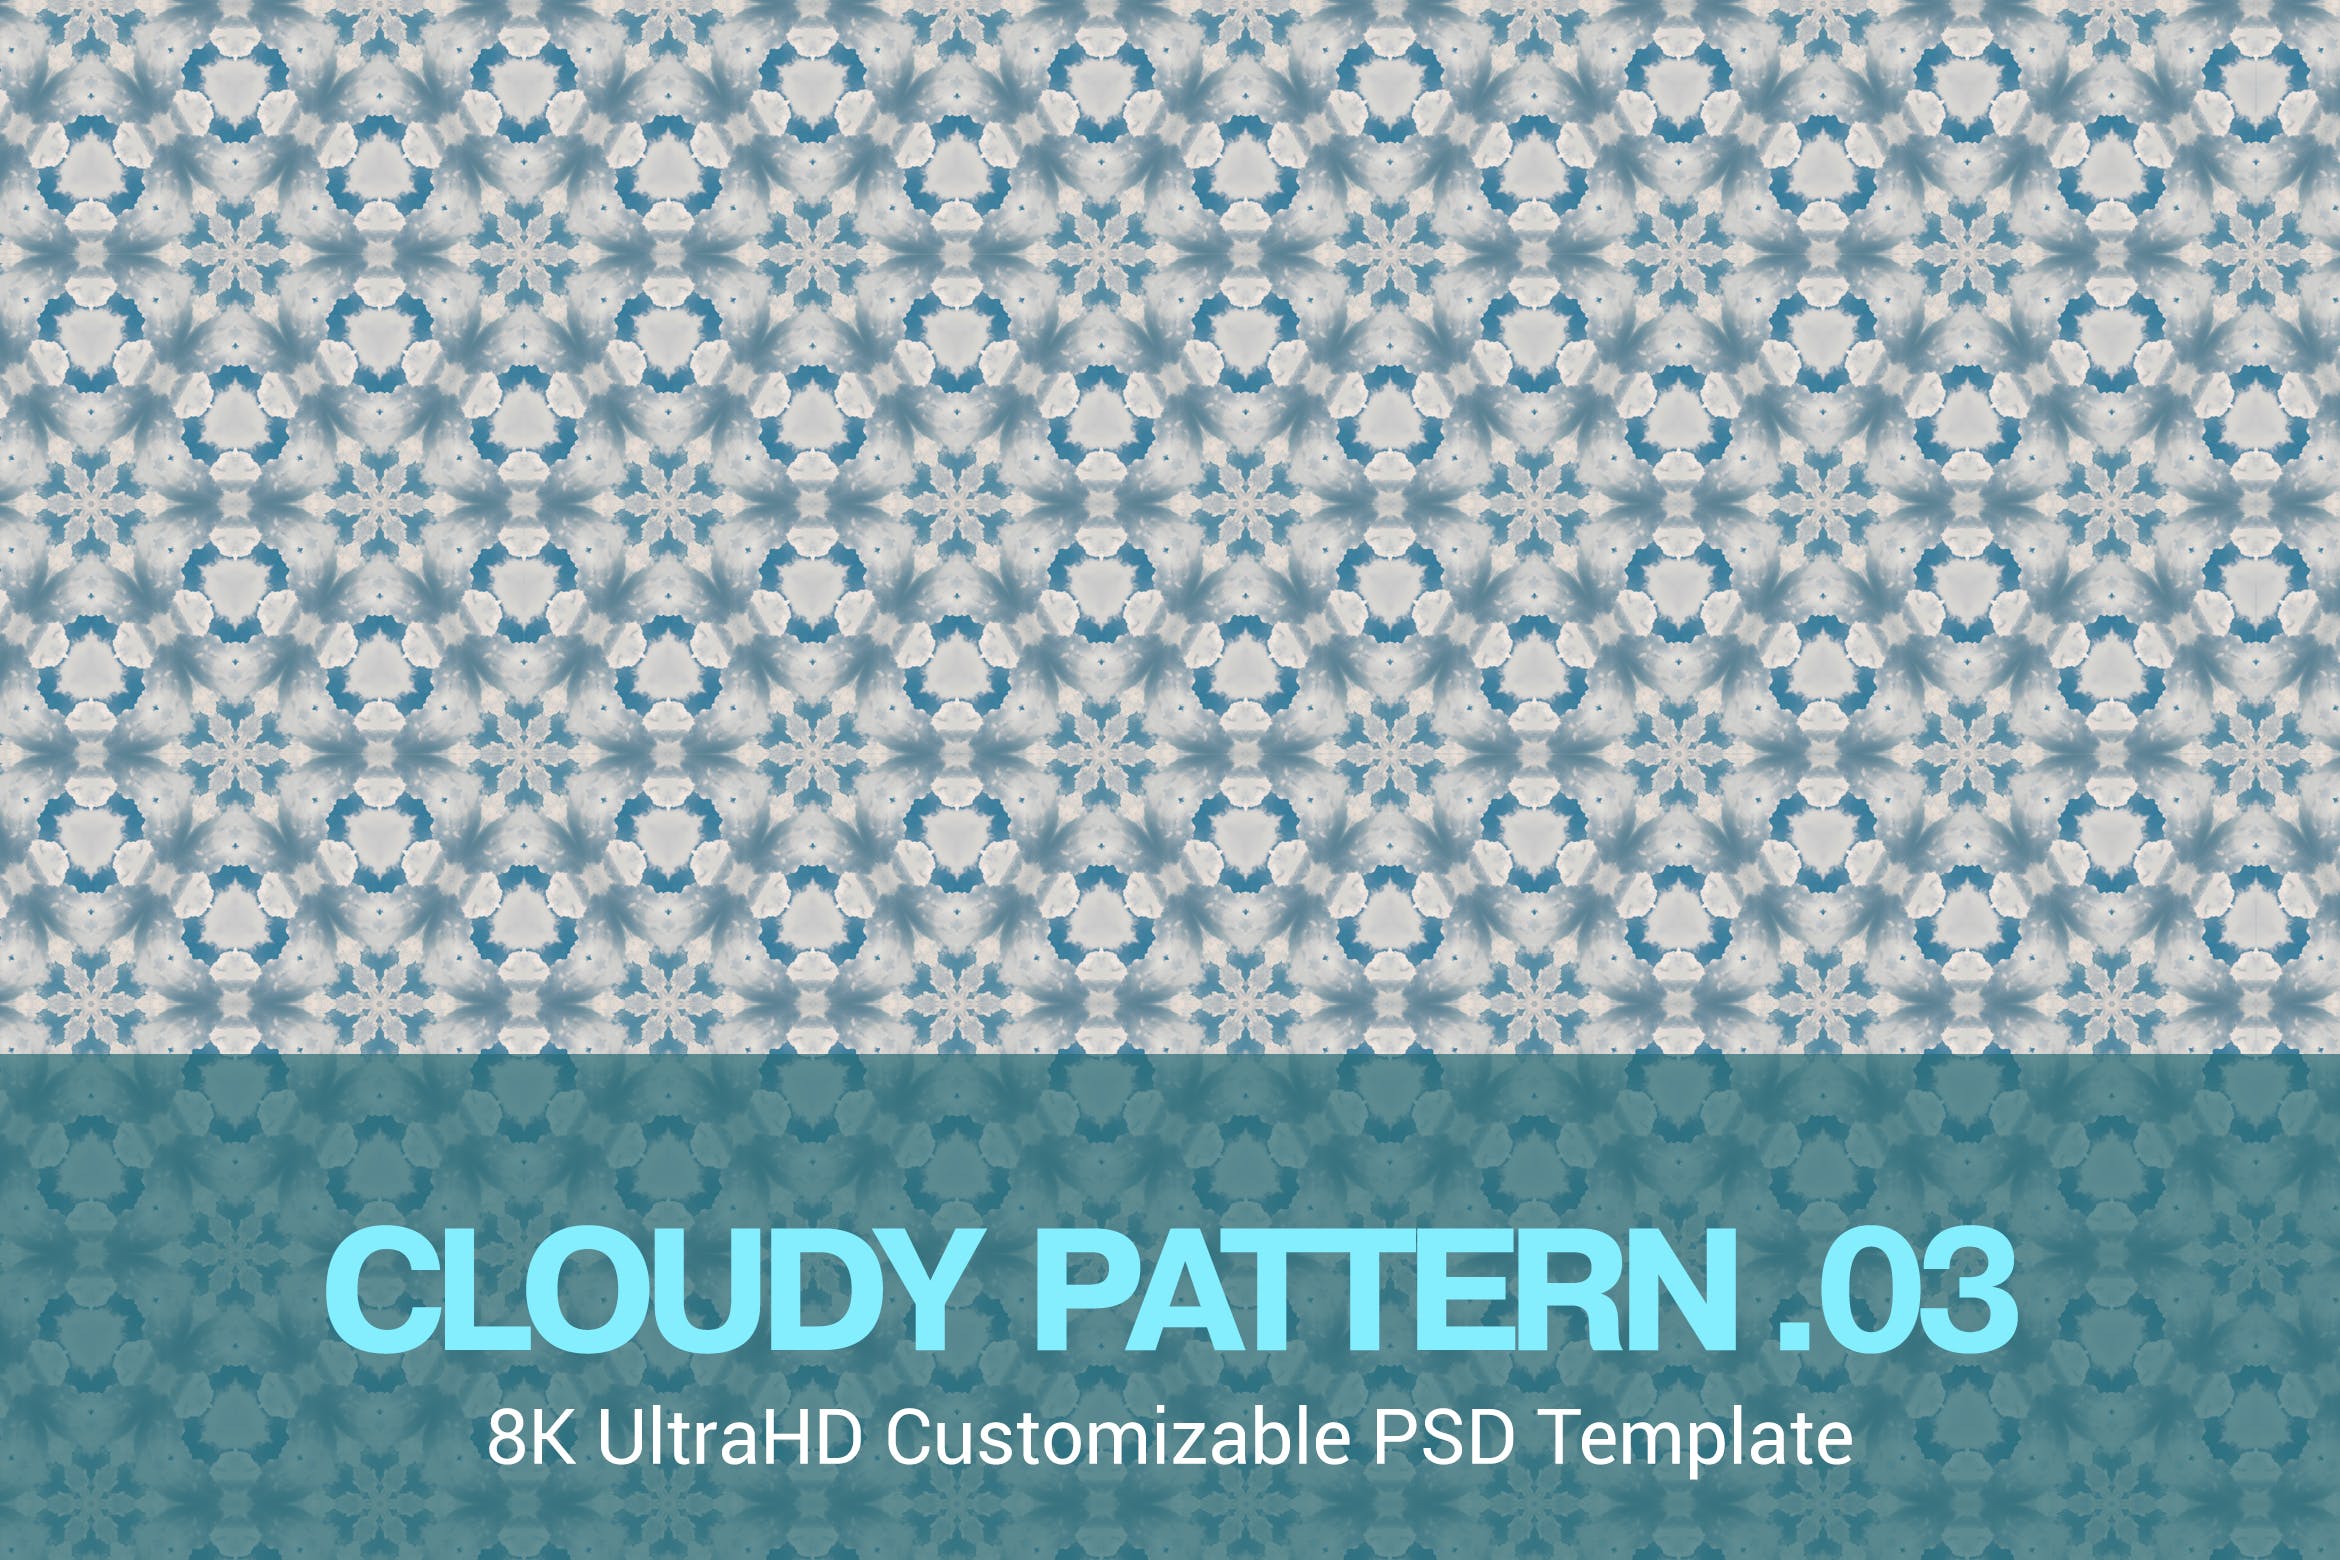 抽象云朵8K超高分辨率图案无缝背景素材v03 8K UltraHD Seamless Cloudy Pattern Background设计素材模板